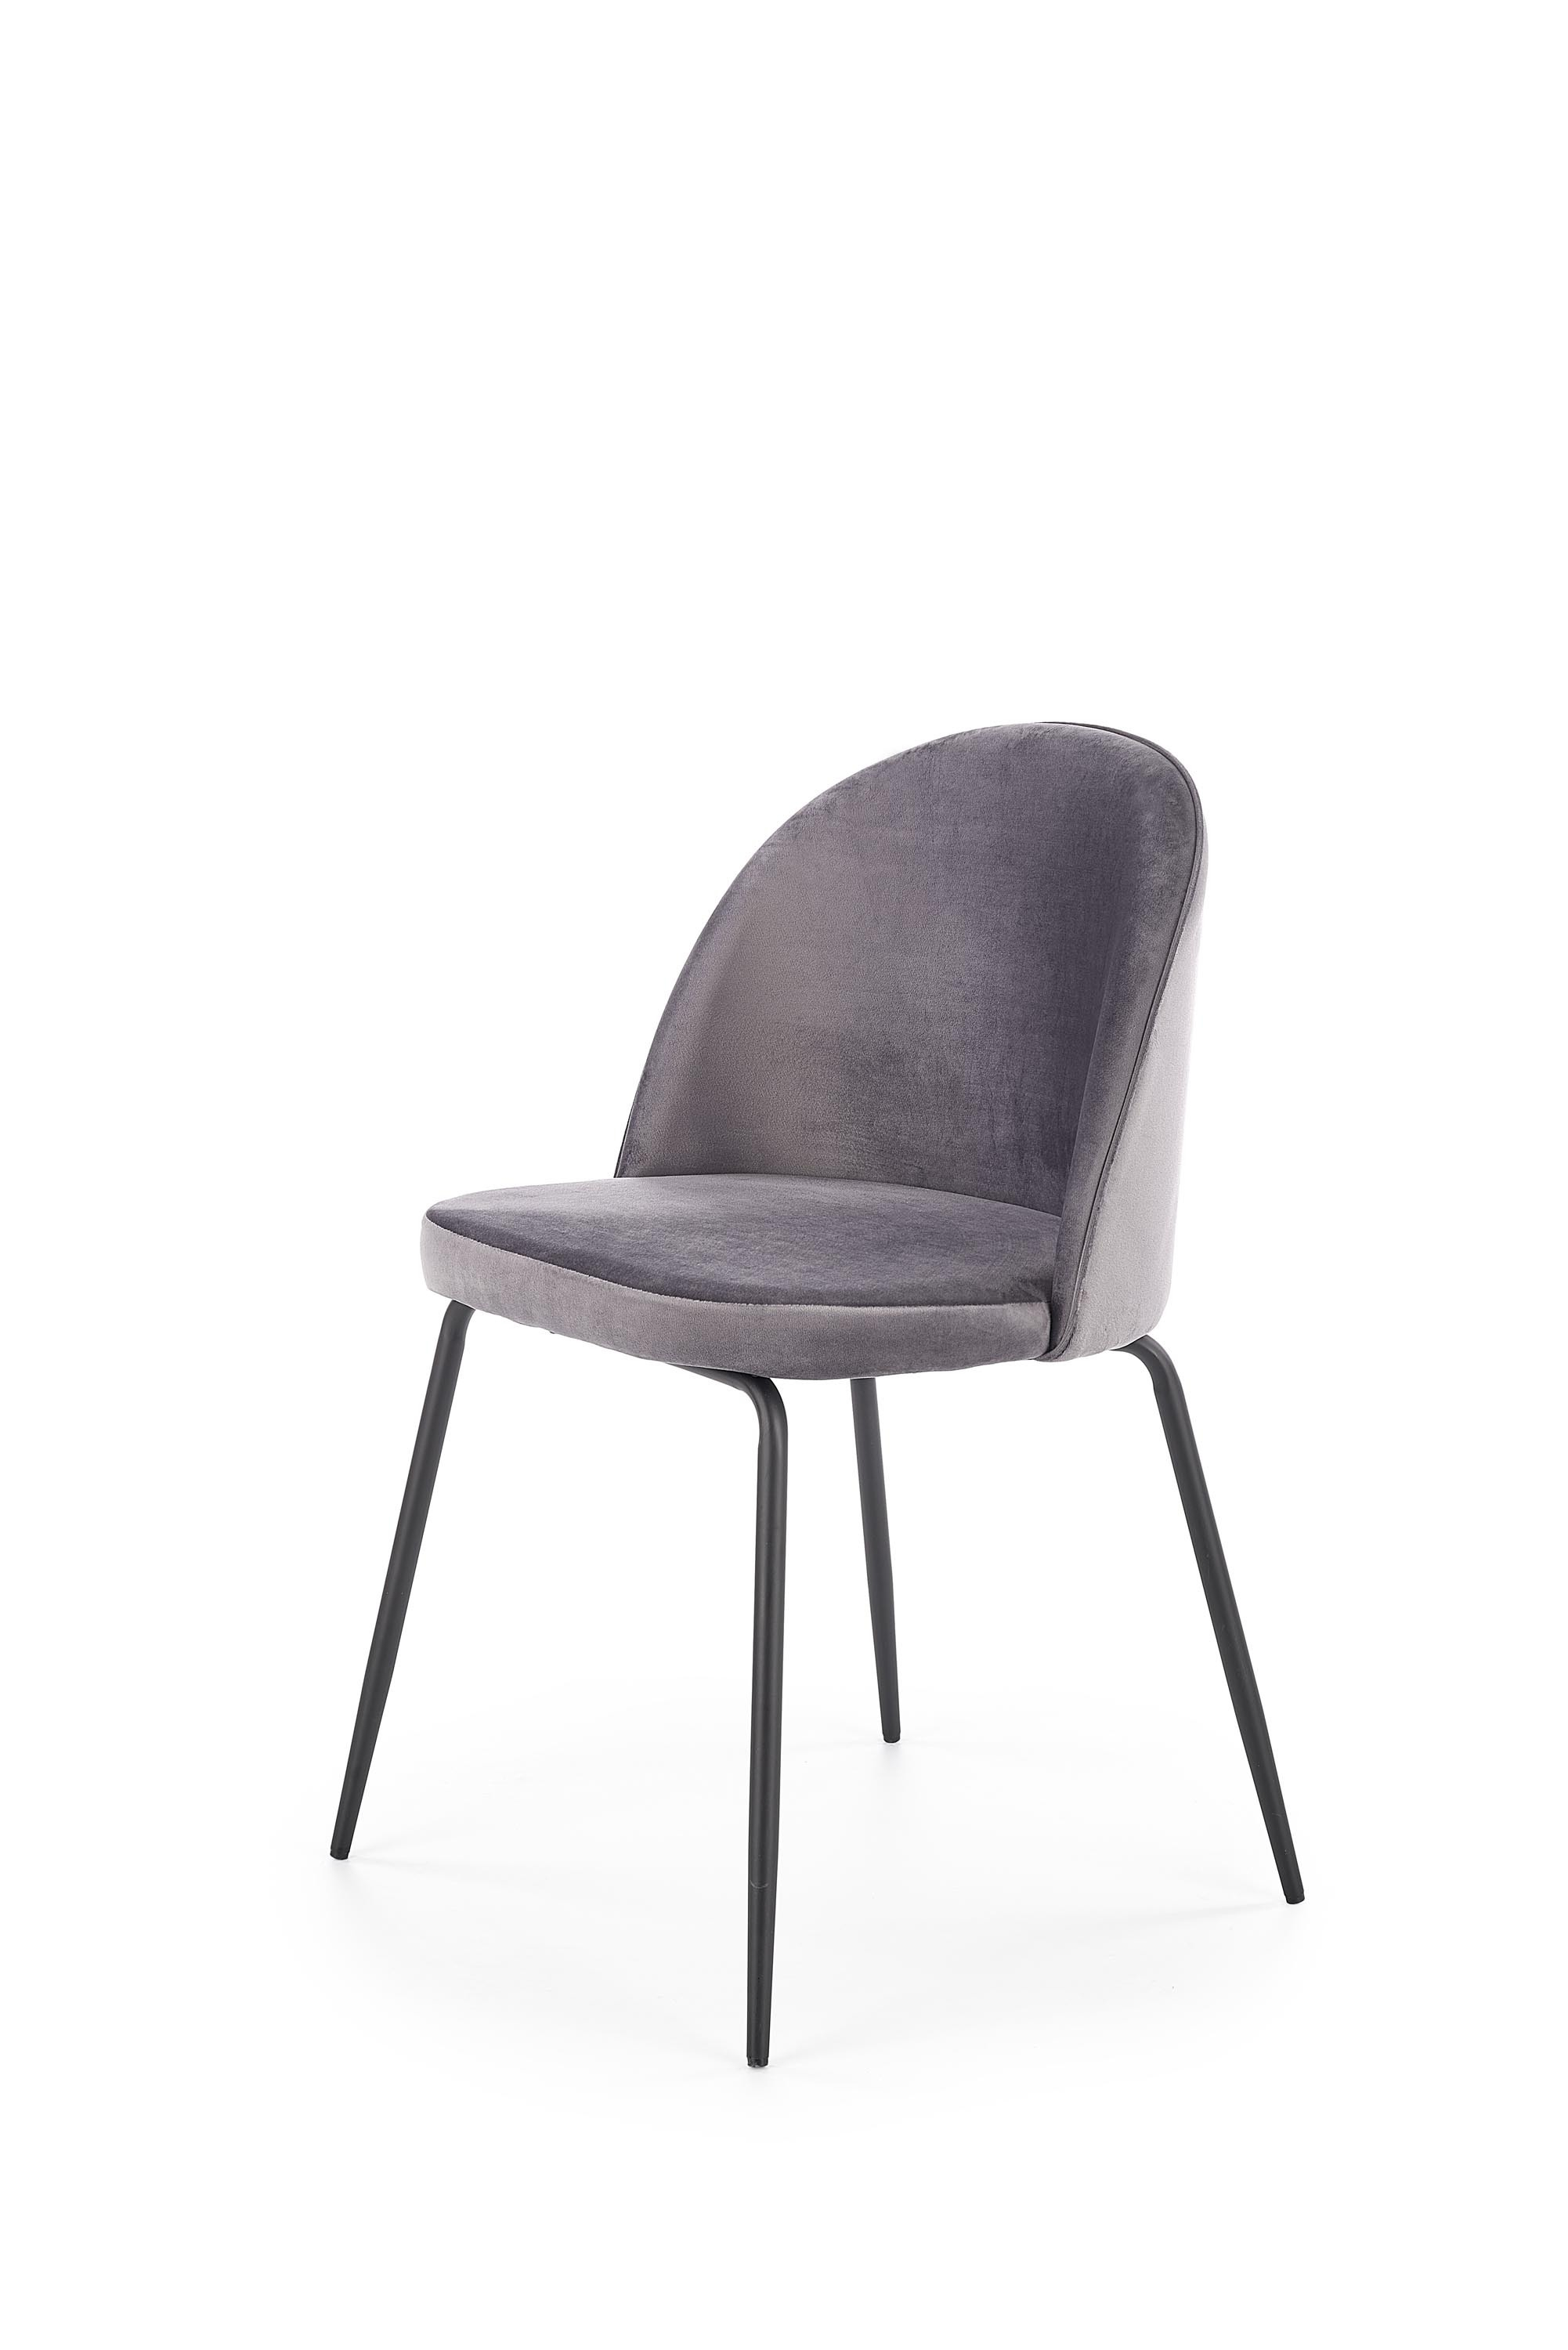 K314 krzesło nogi - czarne, tapicerka - c. popielaty